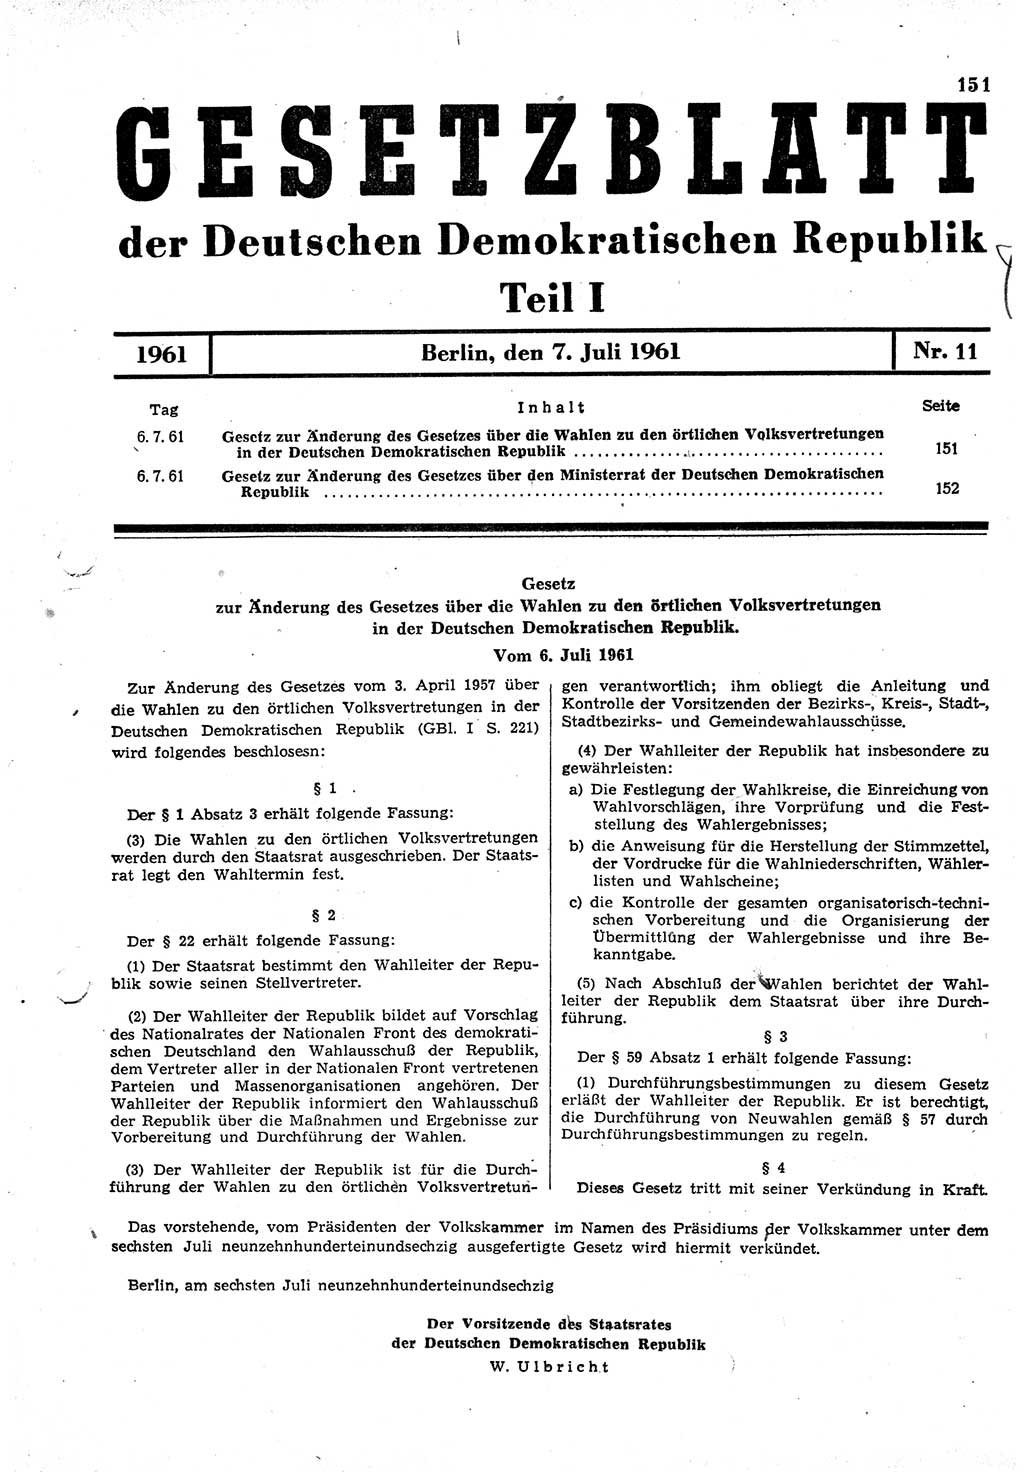 Gesetzblatt (GBl.) der Deutschen Demokratischen Republik (DDR) Teil Ⅰ 1961, Seite 151 (GBl. DDR Ⅰ 1961, S. 151)